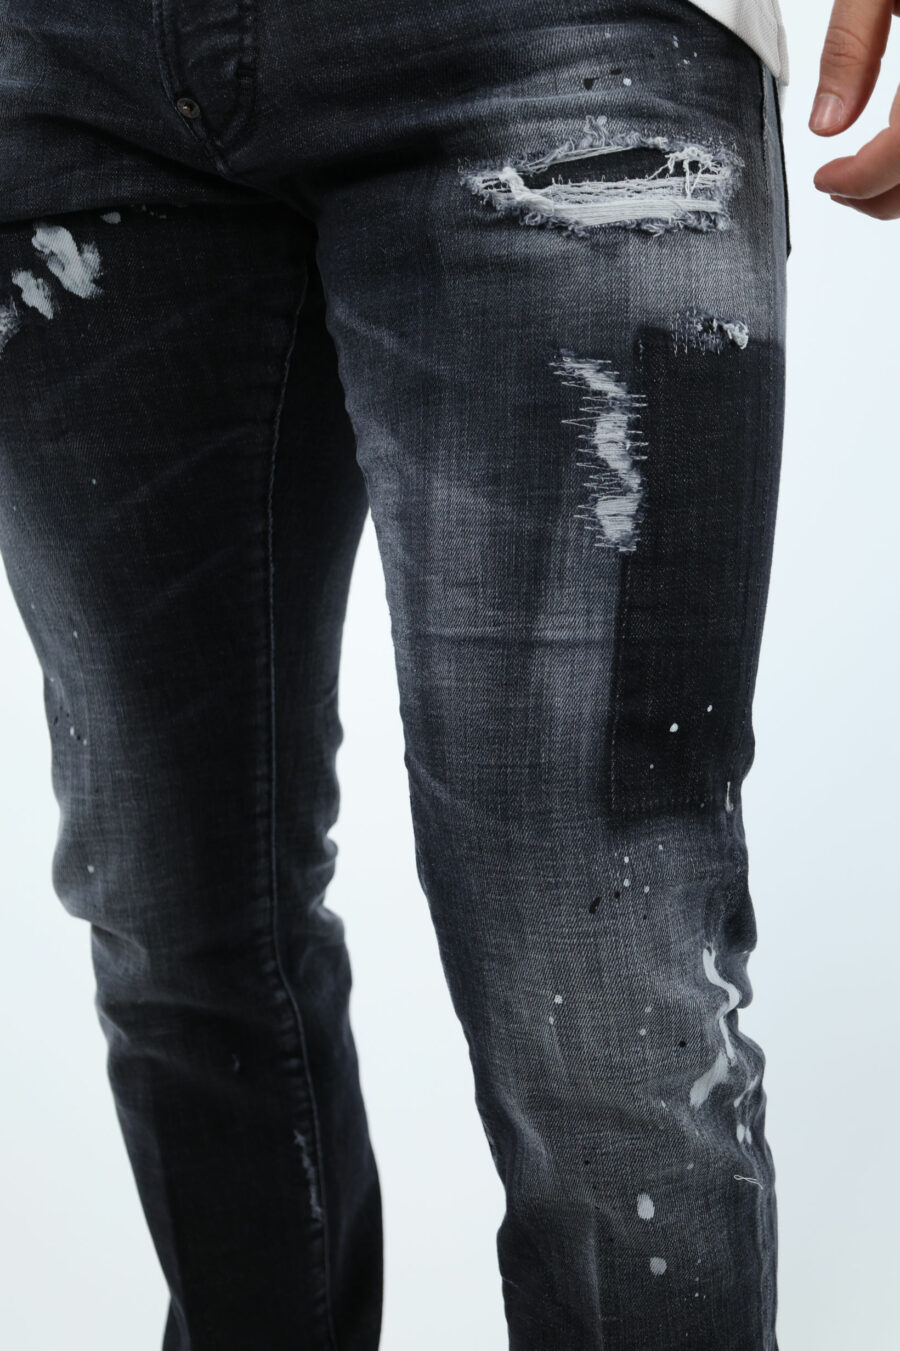 Calças de ganga "cool guy jean" pretas com rasgões e desgastadas - 106755